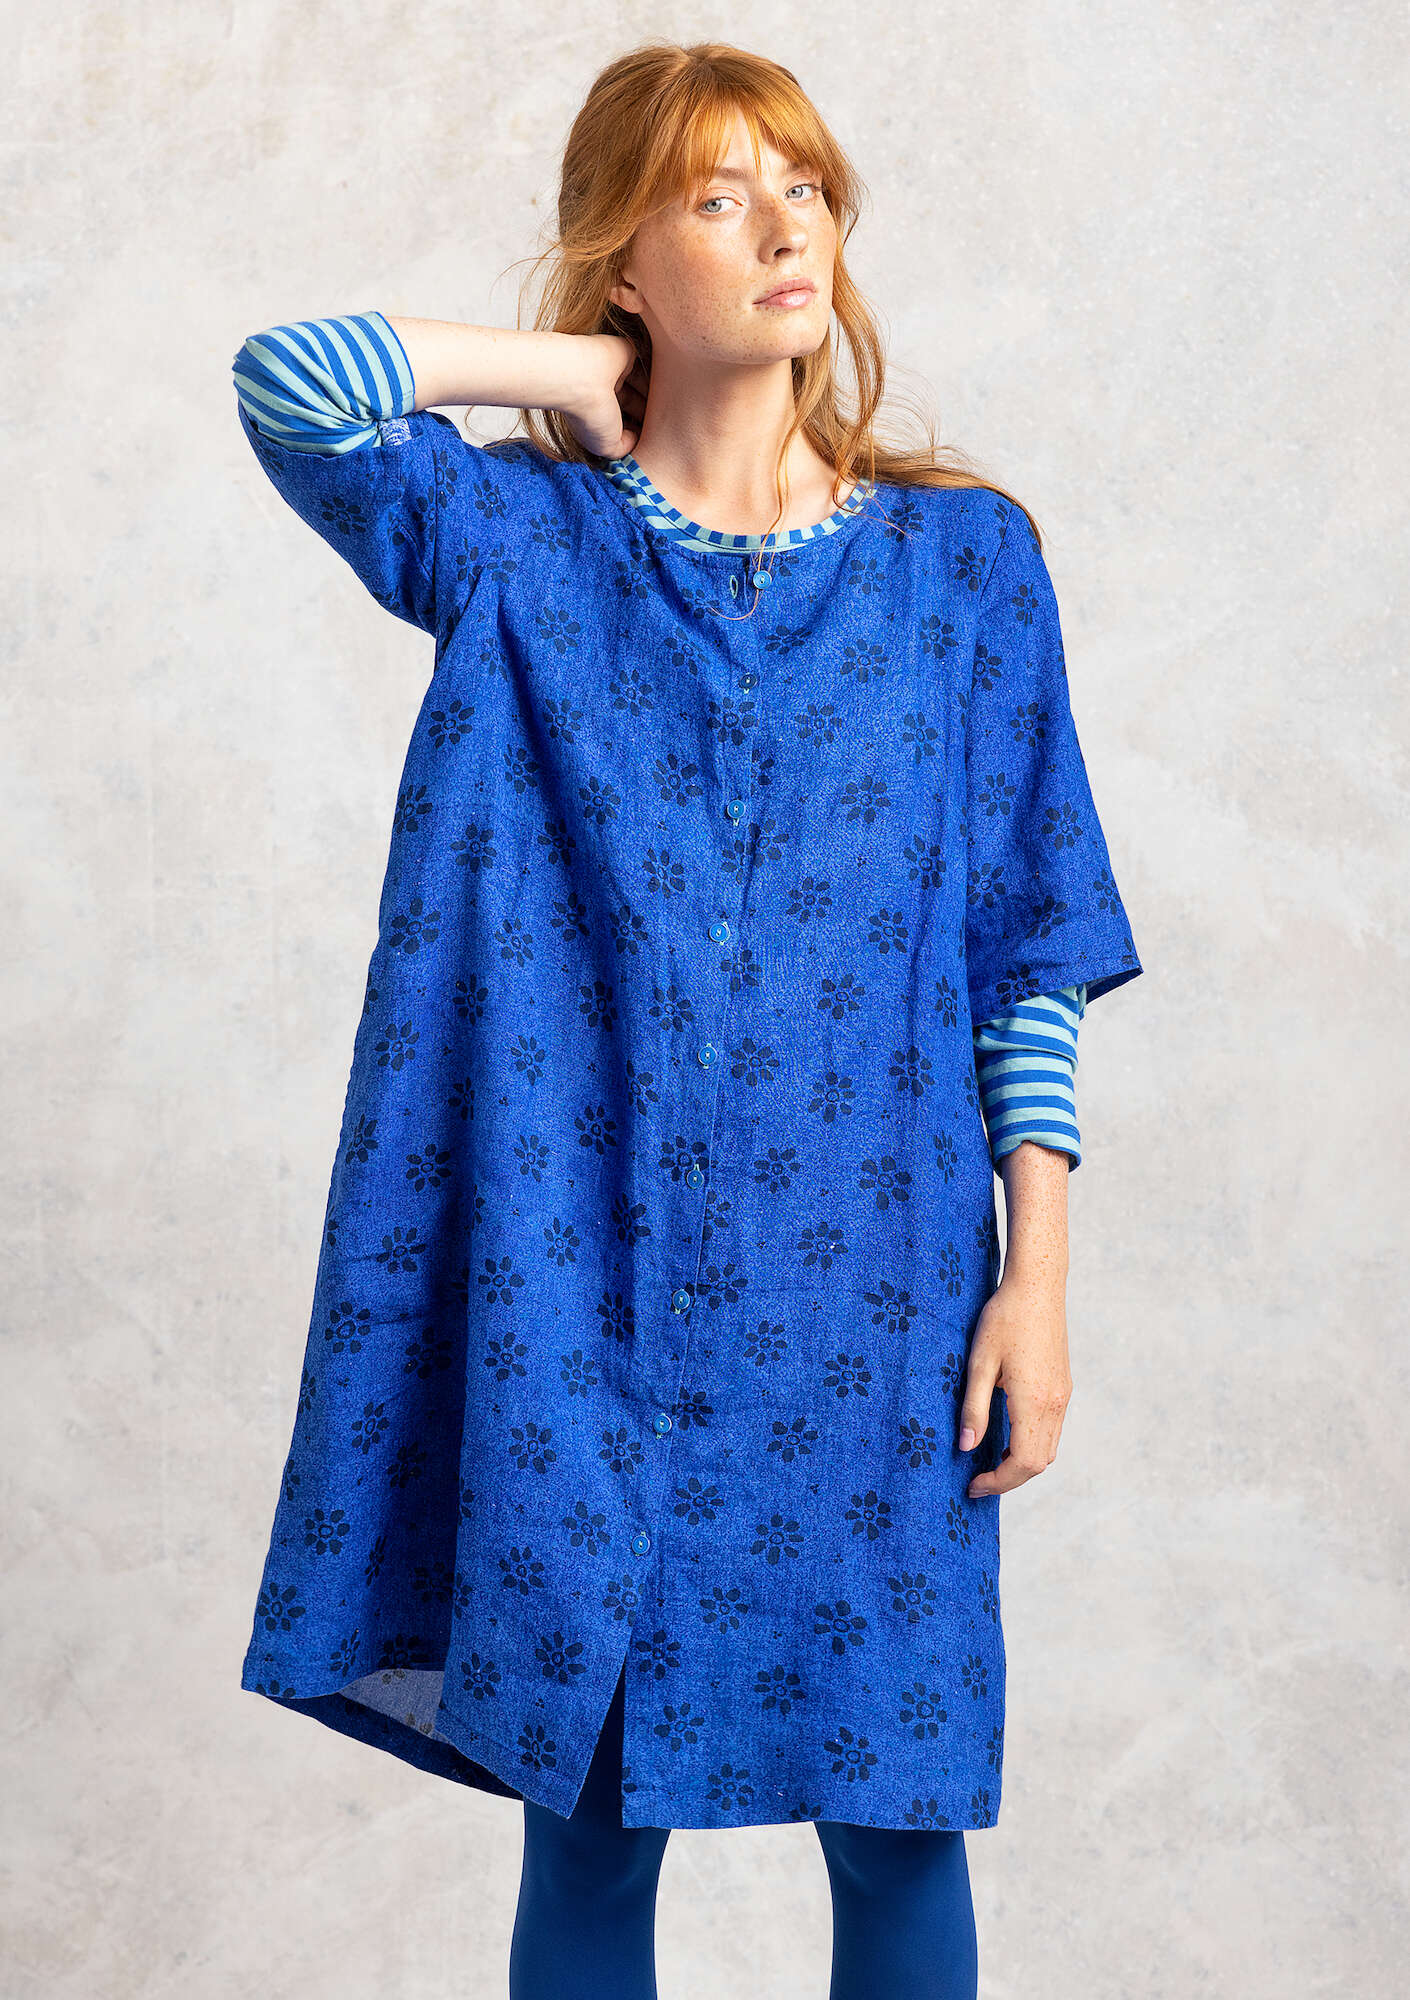 Vävd klänning  Ester  i lin safirblå/mönstrad